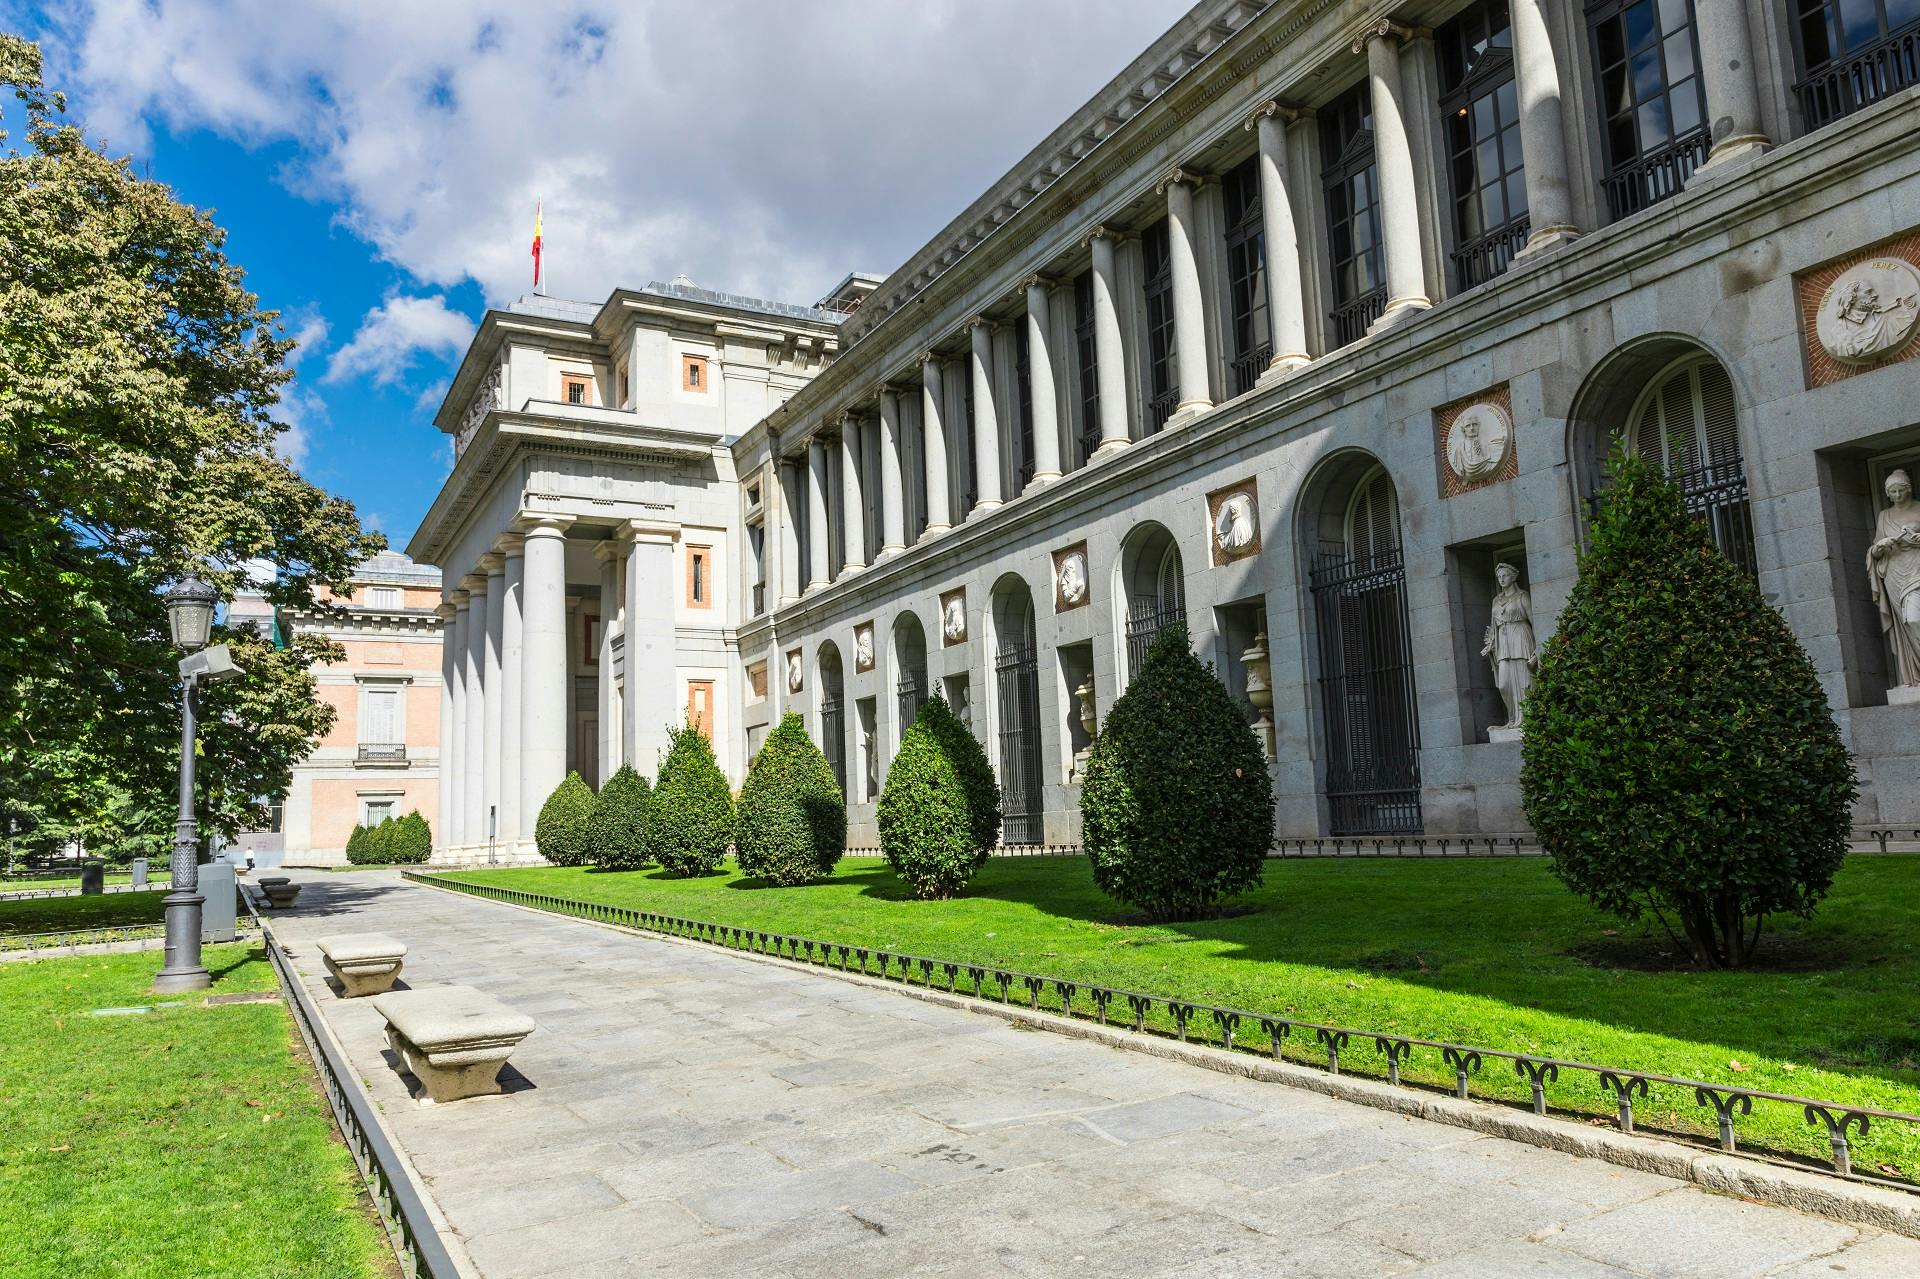 Prado Museum skip the line tickets and El Retiro Park guided tour Musement